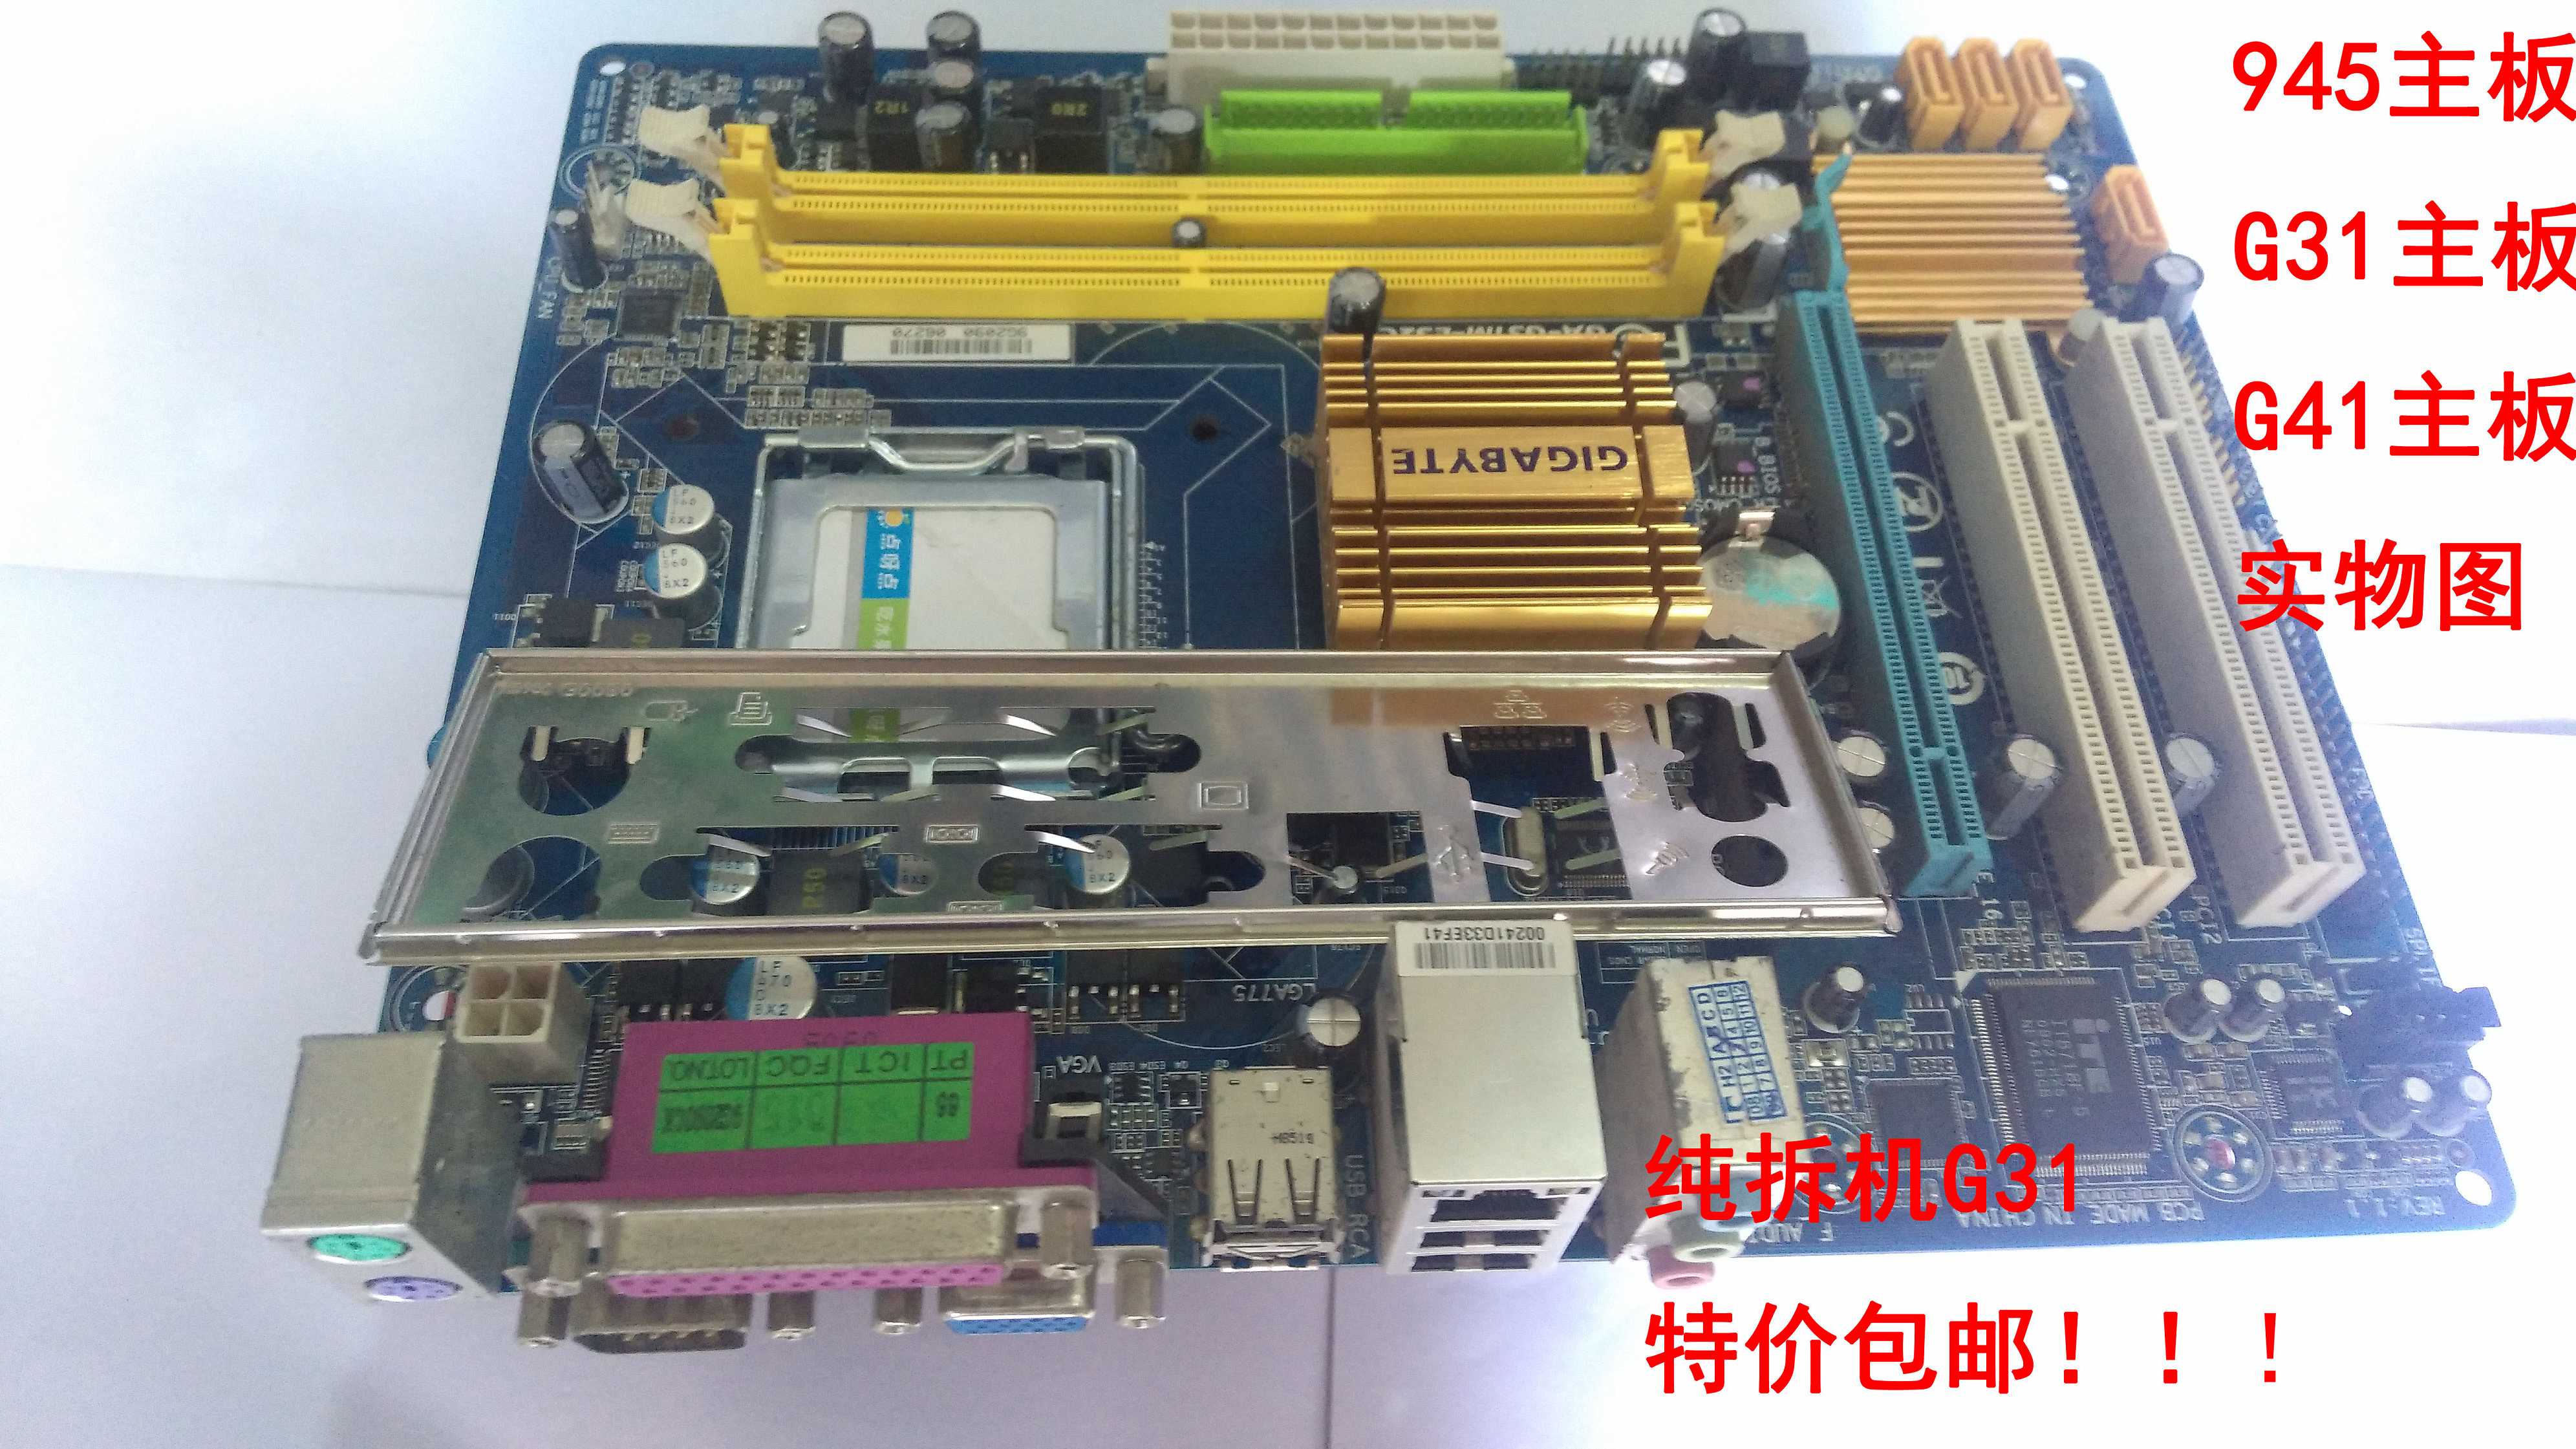 原装拆机正品945G31G41H61台式机775主板DDR2/DDR3全集成显卡主板